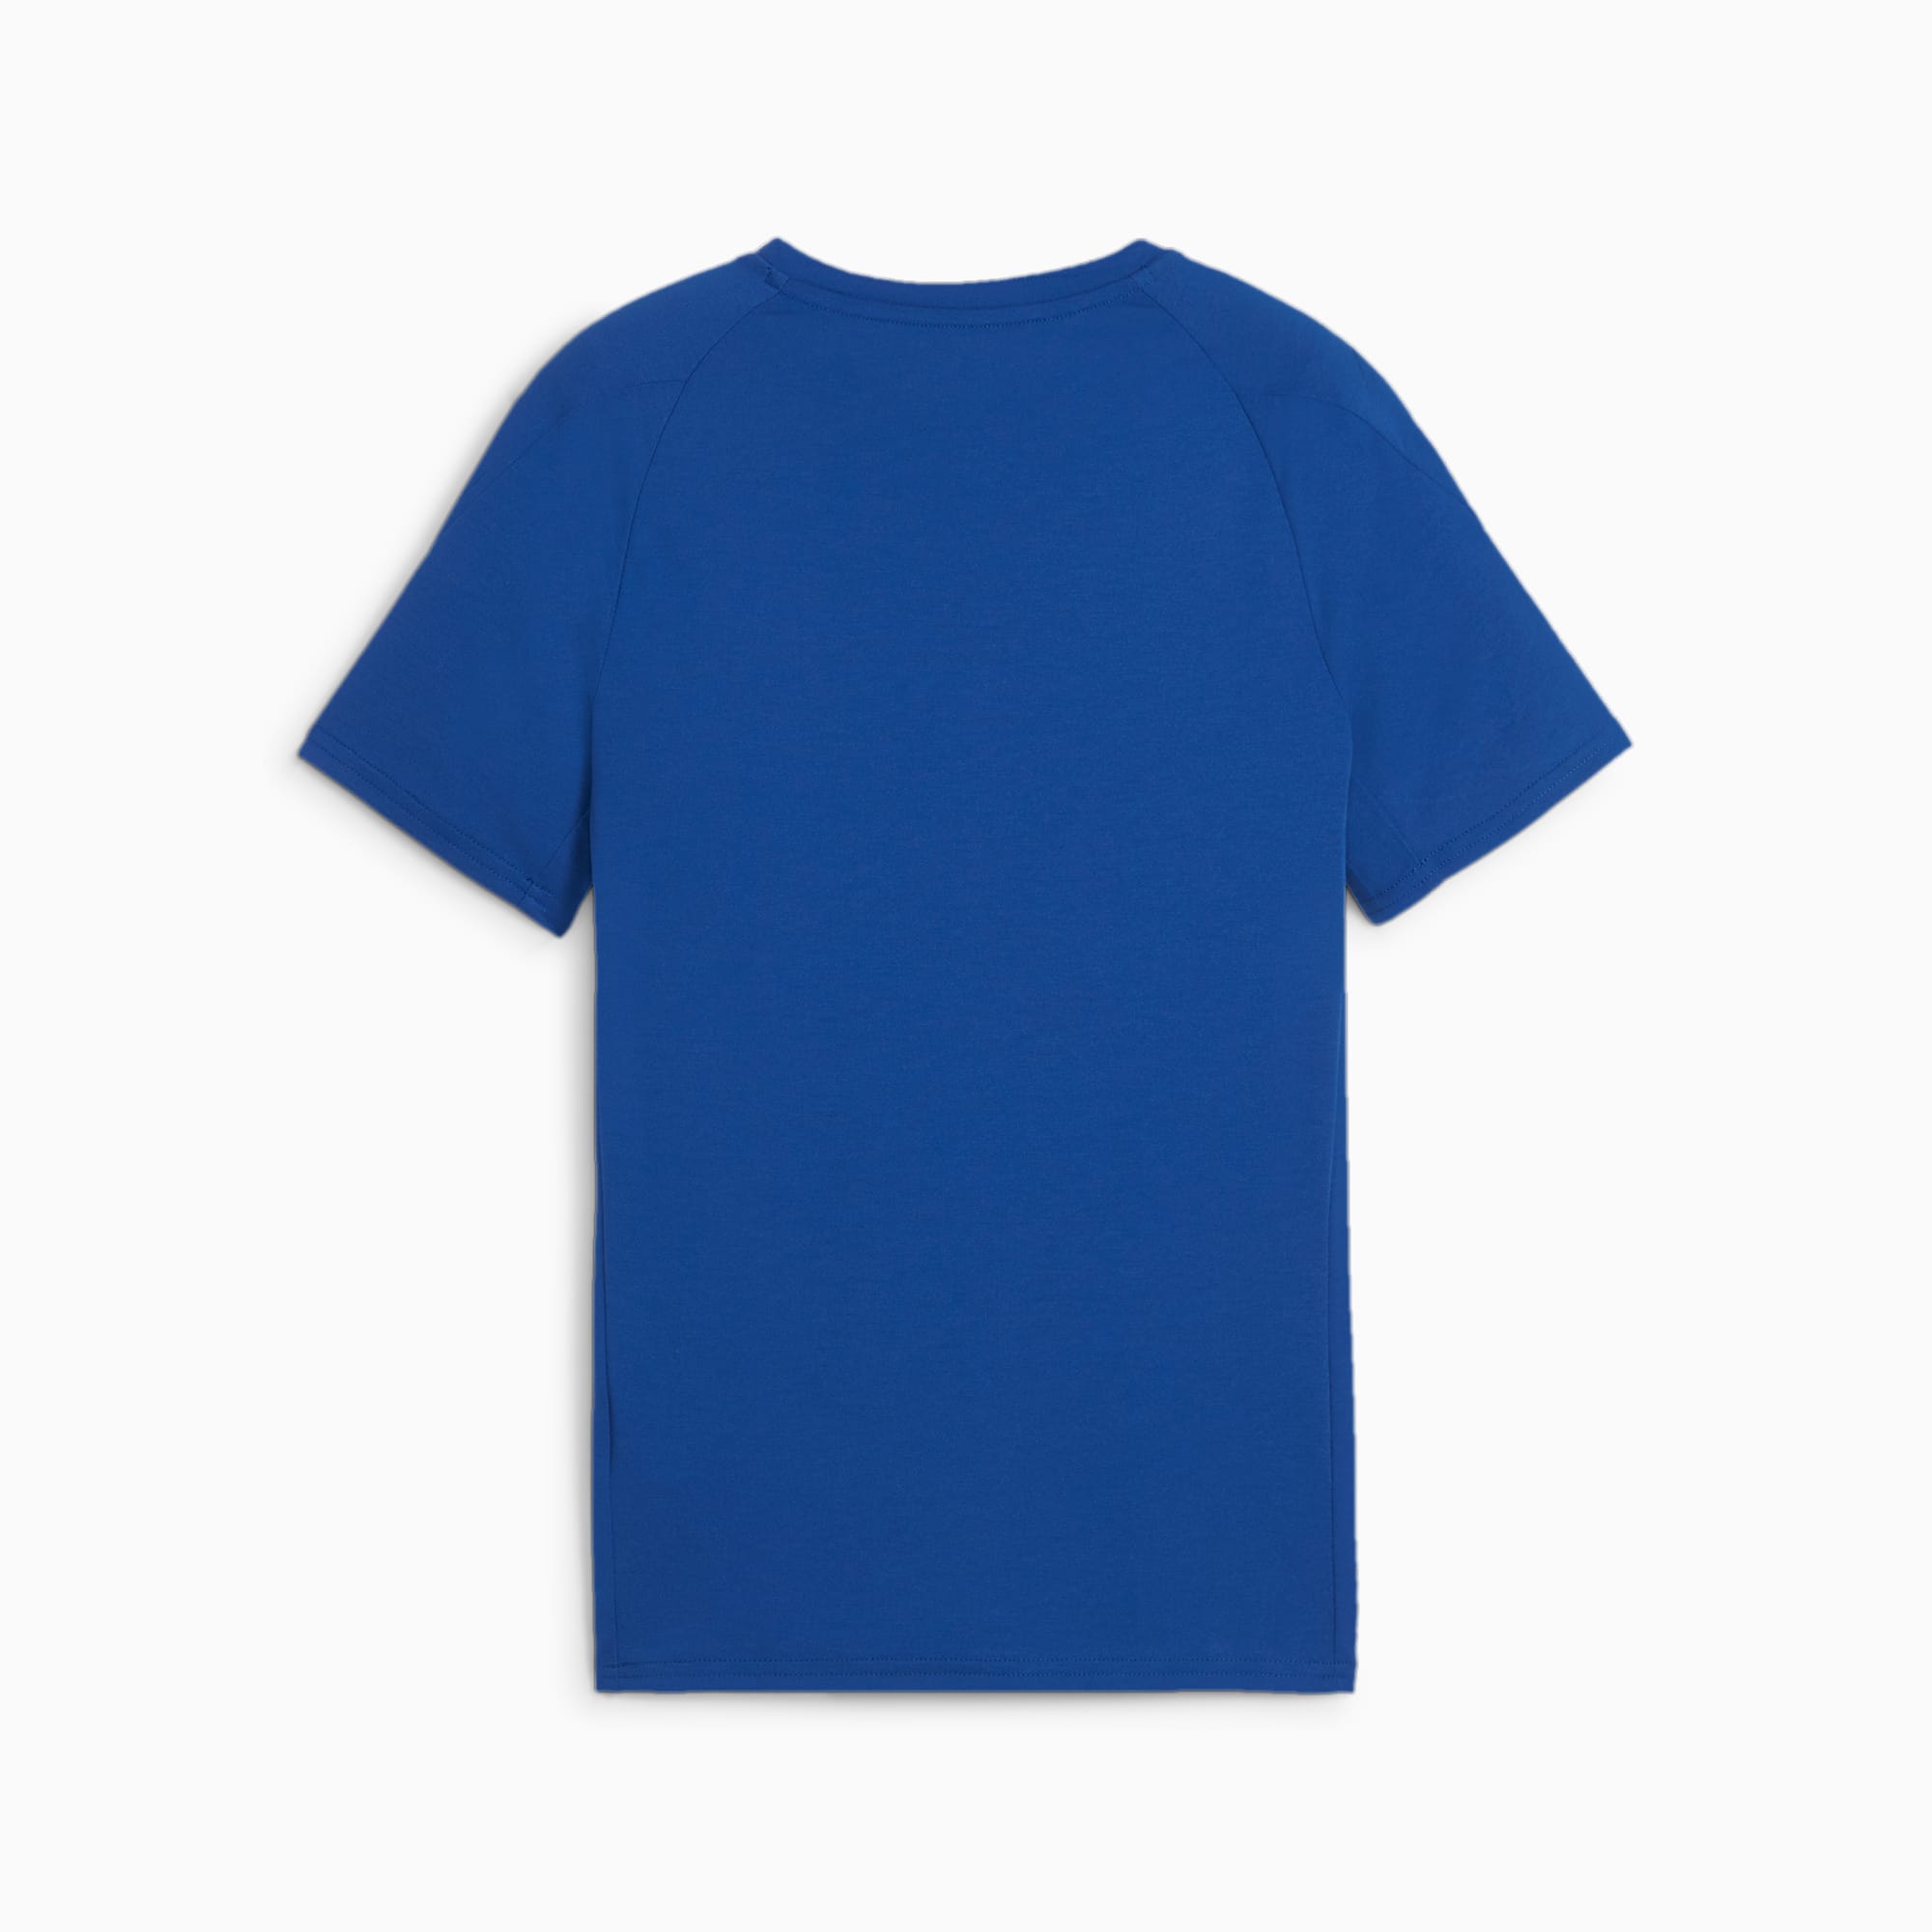 PUMA Evostripe T-Shirt Kids Donkerblauw Wit